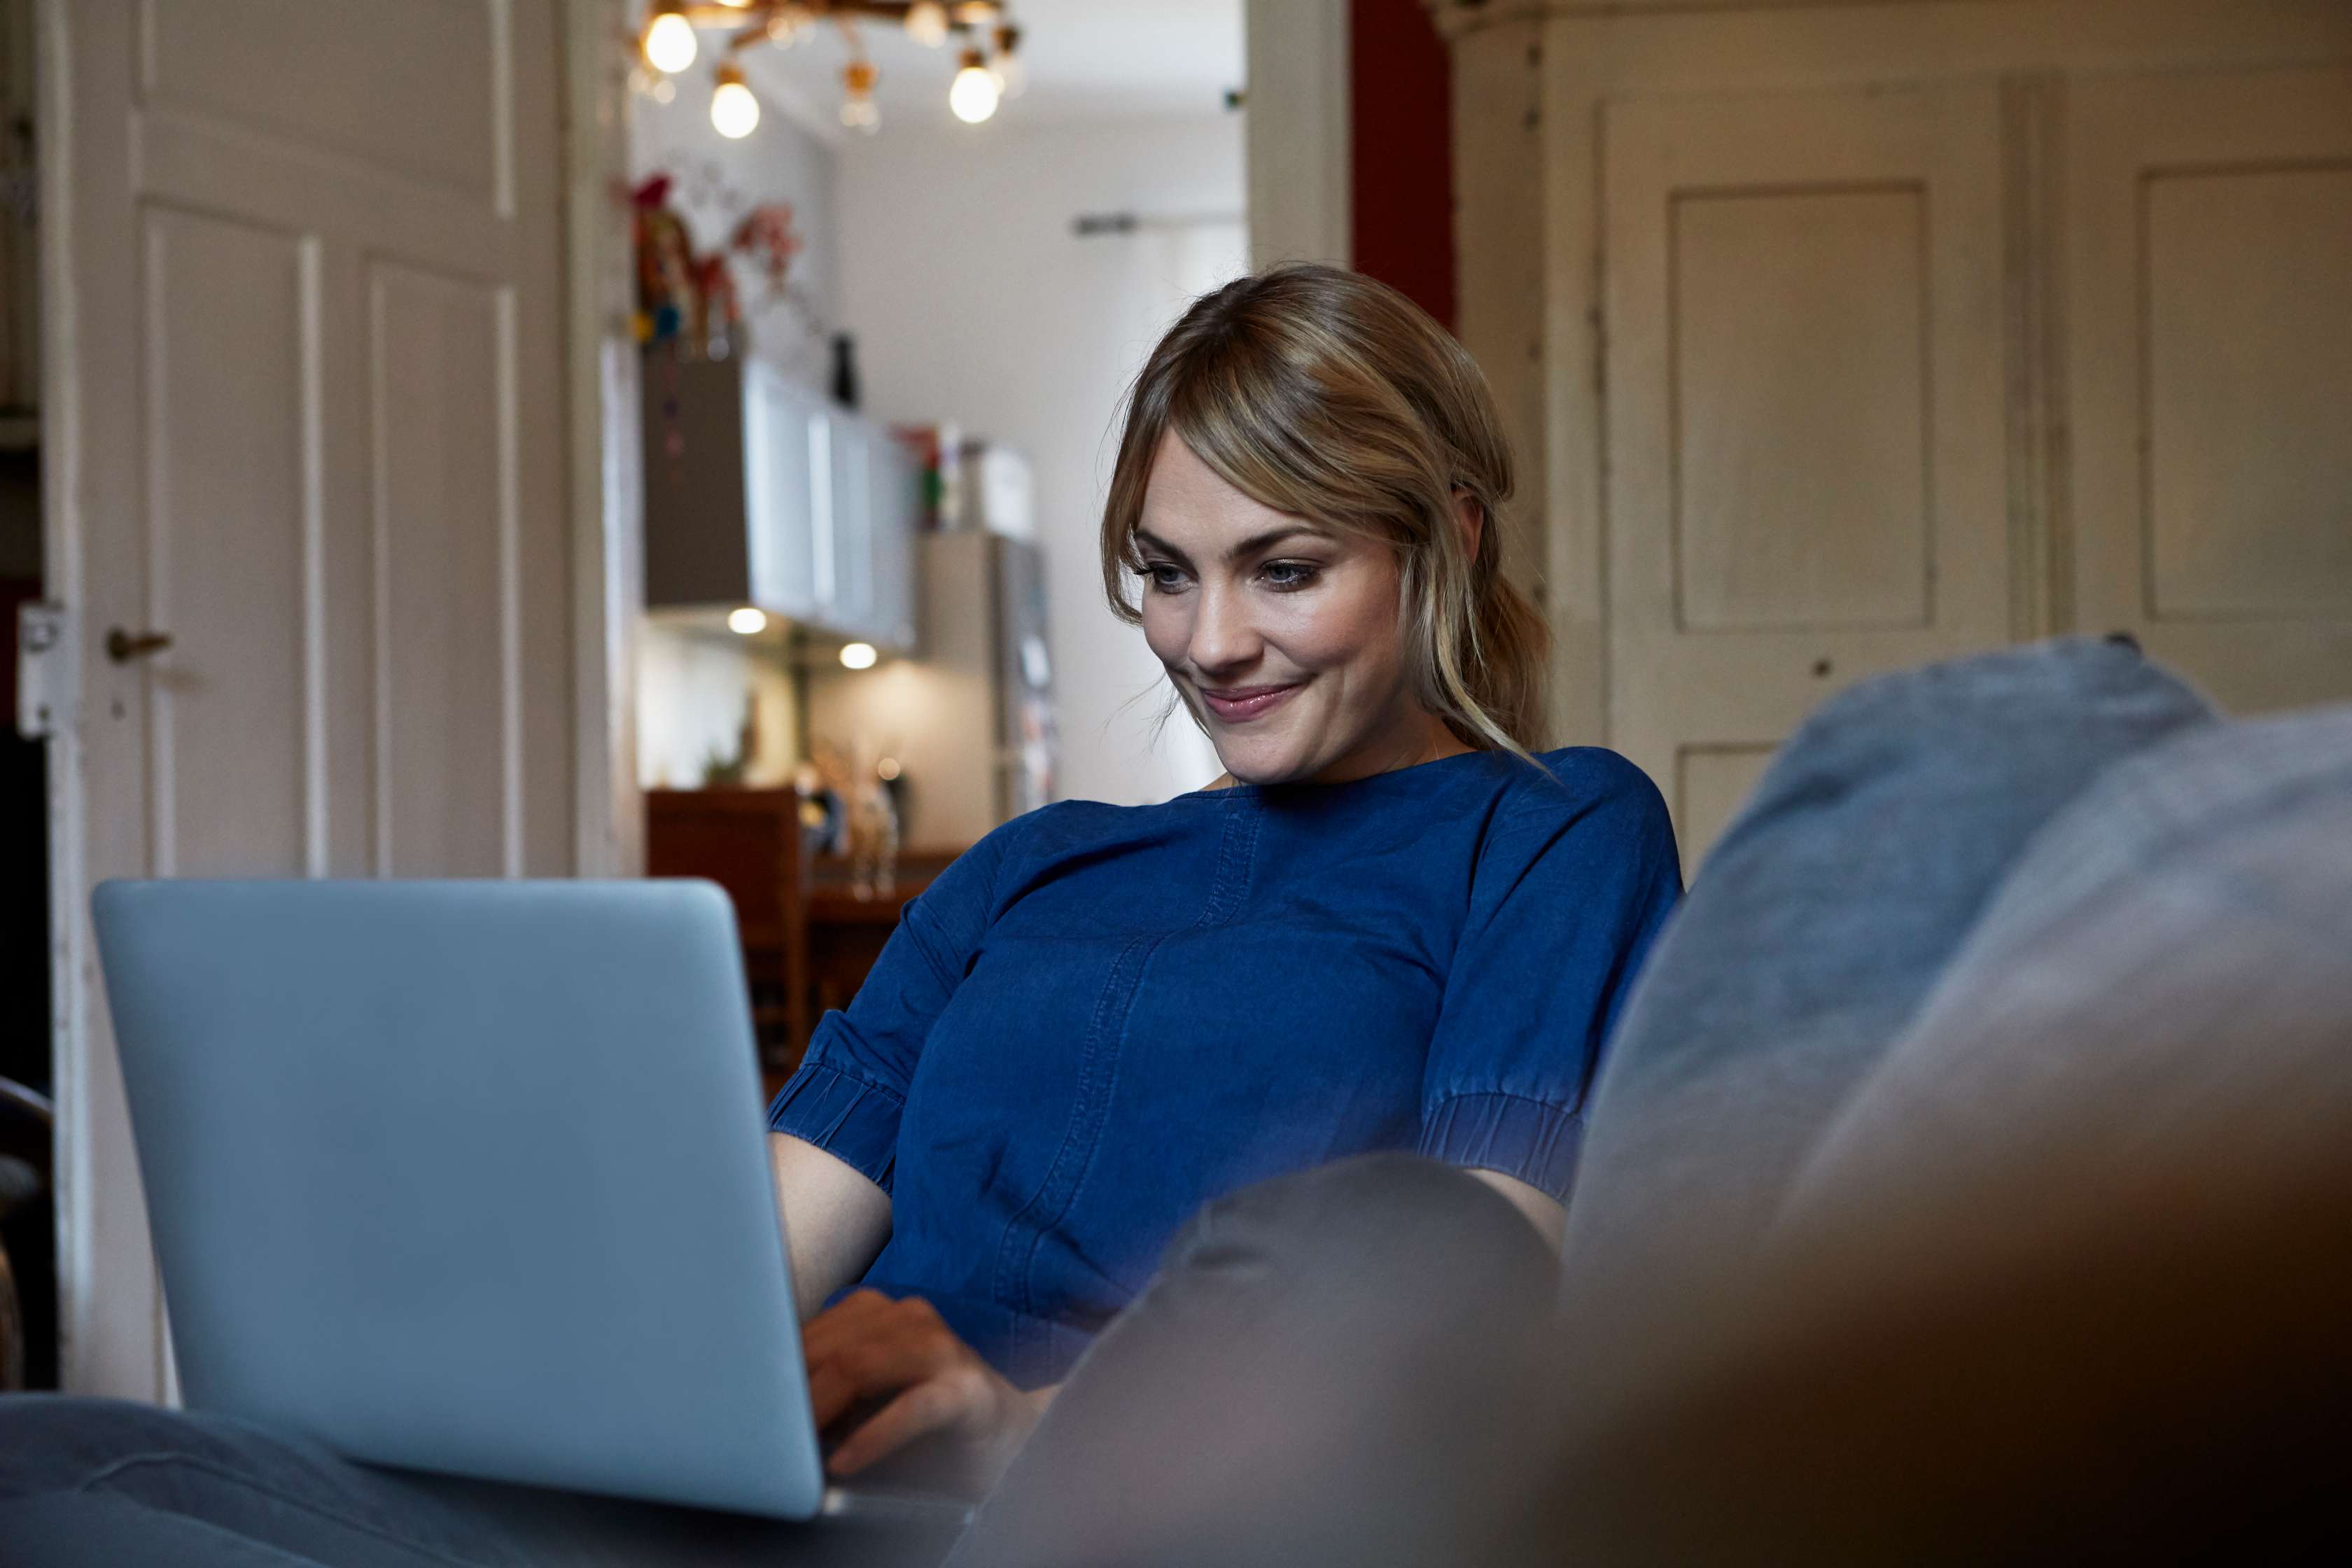 Junge Frau sitzt lächelnd mit Laptop auf dem Schoß auf dem Sofa